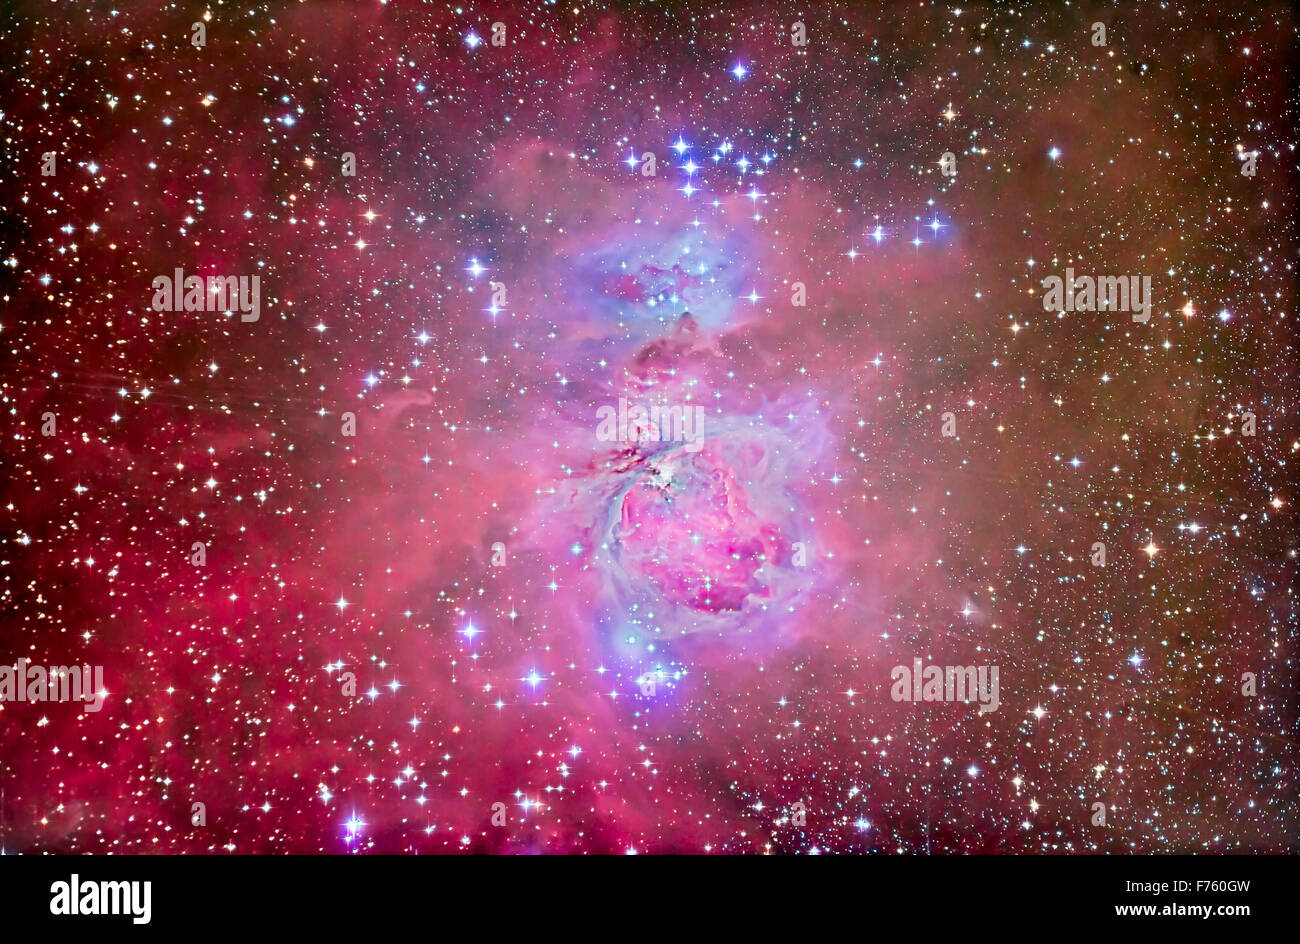 La Nébuleuse d'Orion, M42 et M43, avec des associés et d'amas d'étoiles de la nébuleuse, comme l'homme qui court au-dessus de la nébuleuse NGC (1 Banque D'Images